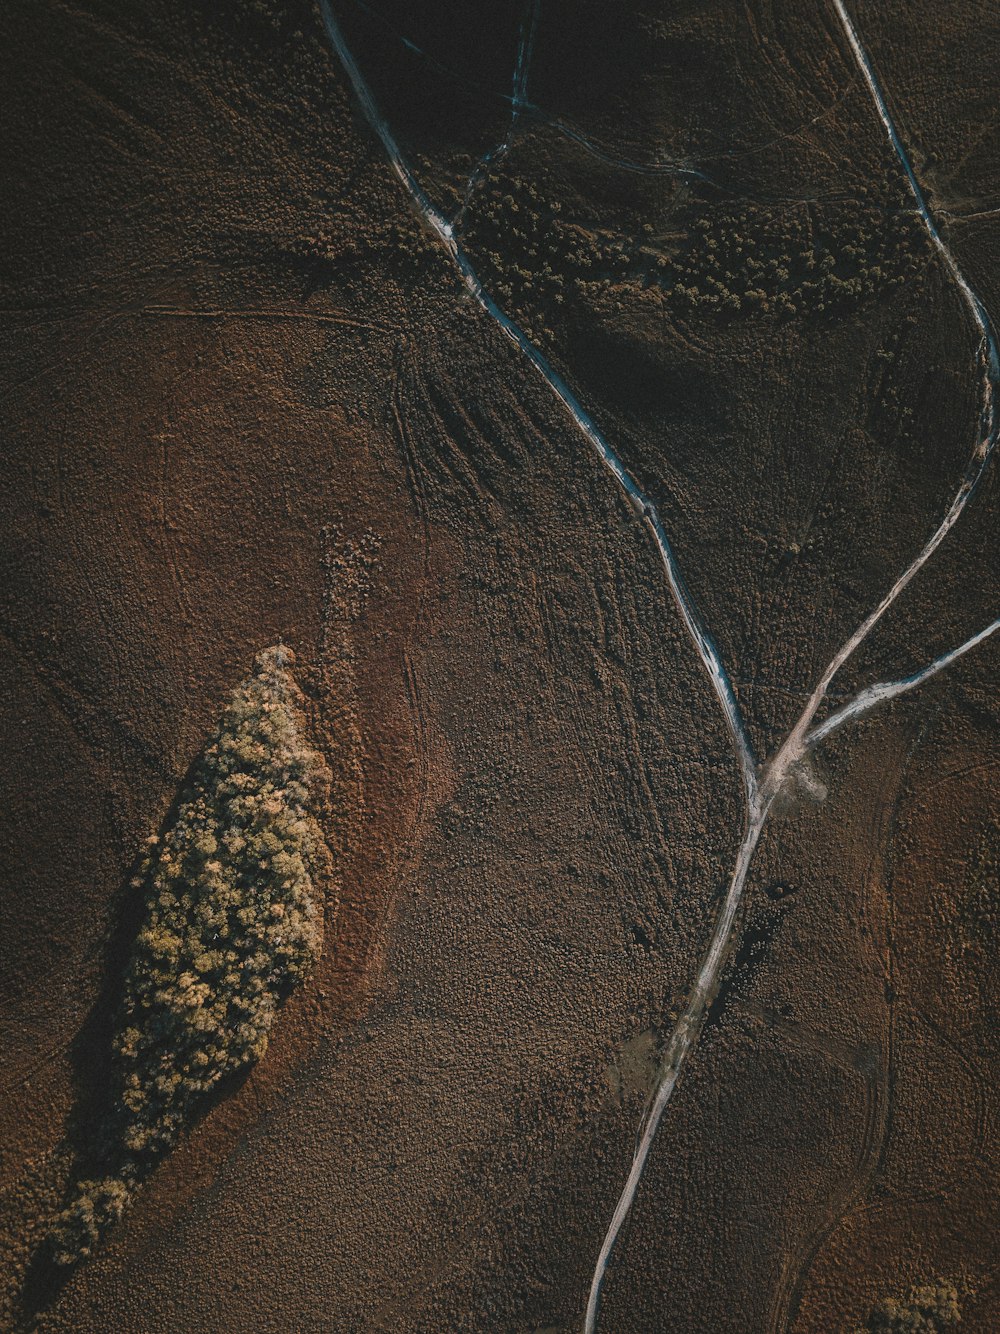 Fotografía aérea de campo marrón durante el día